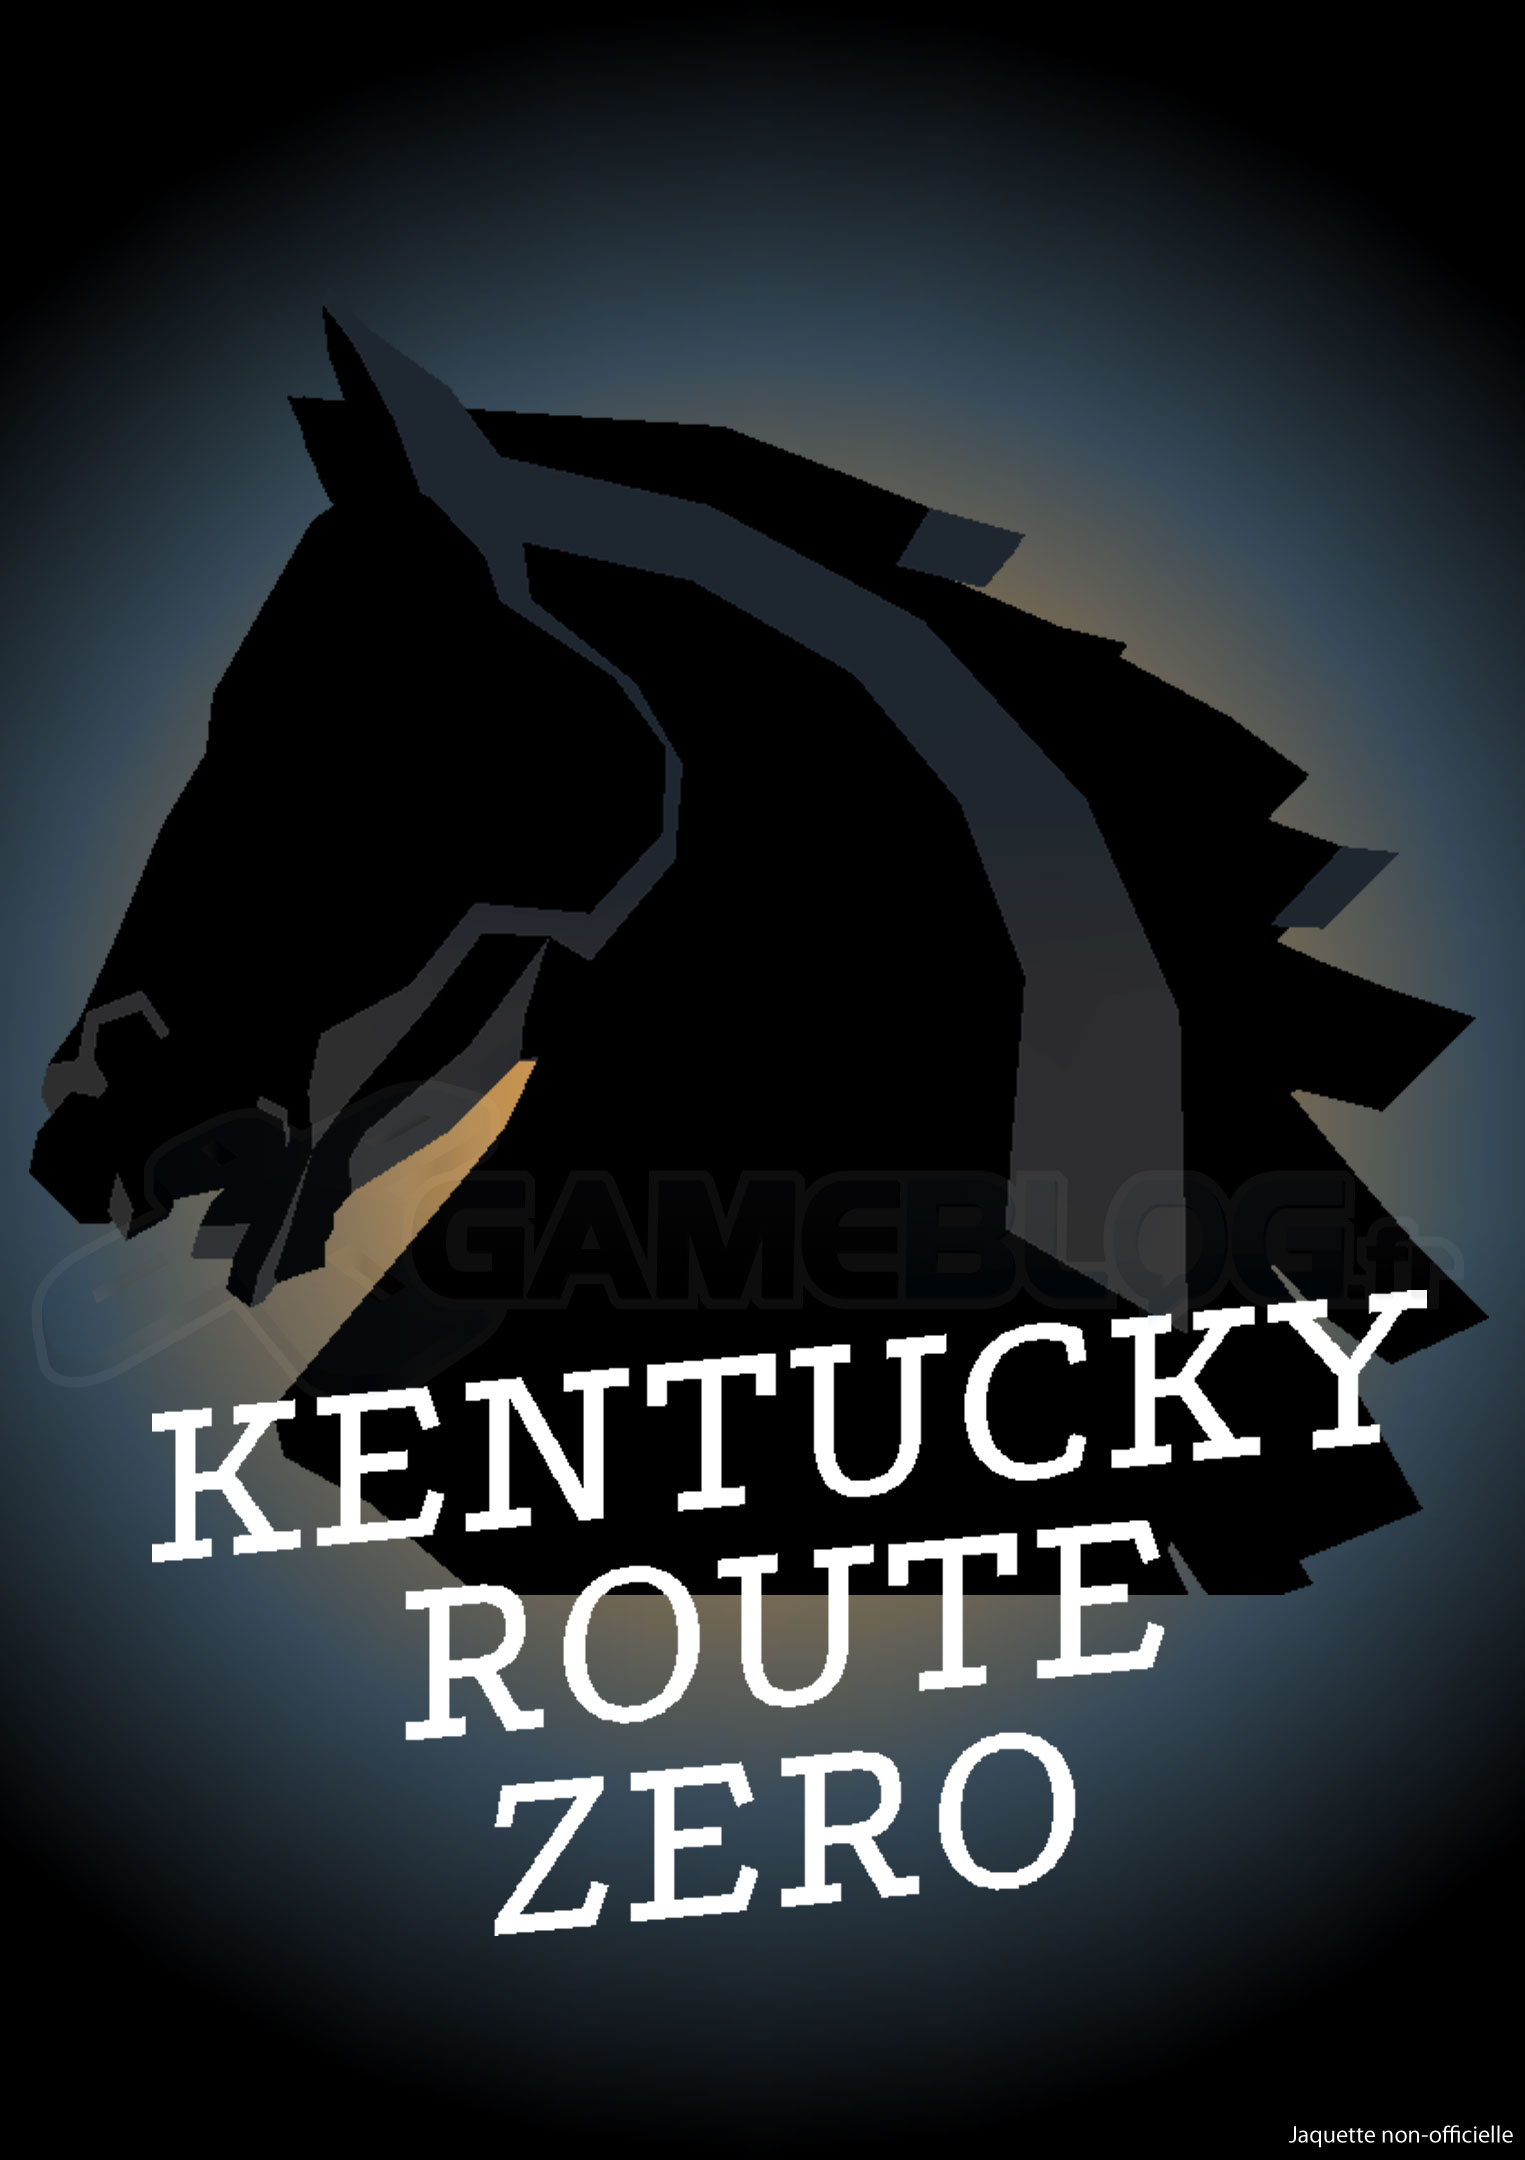 Kentucky Route Zero Act I